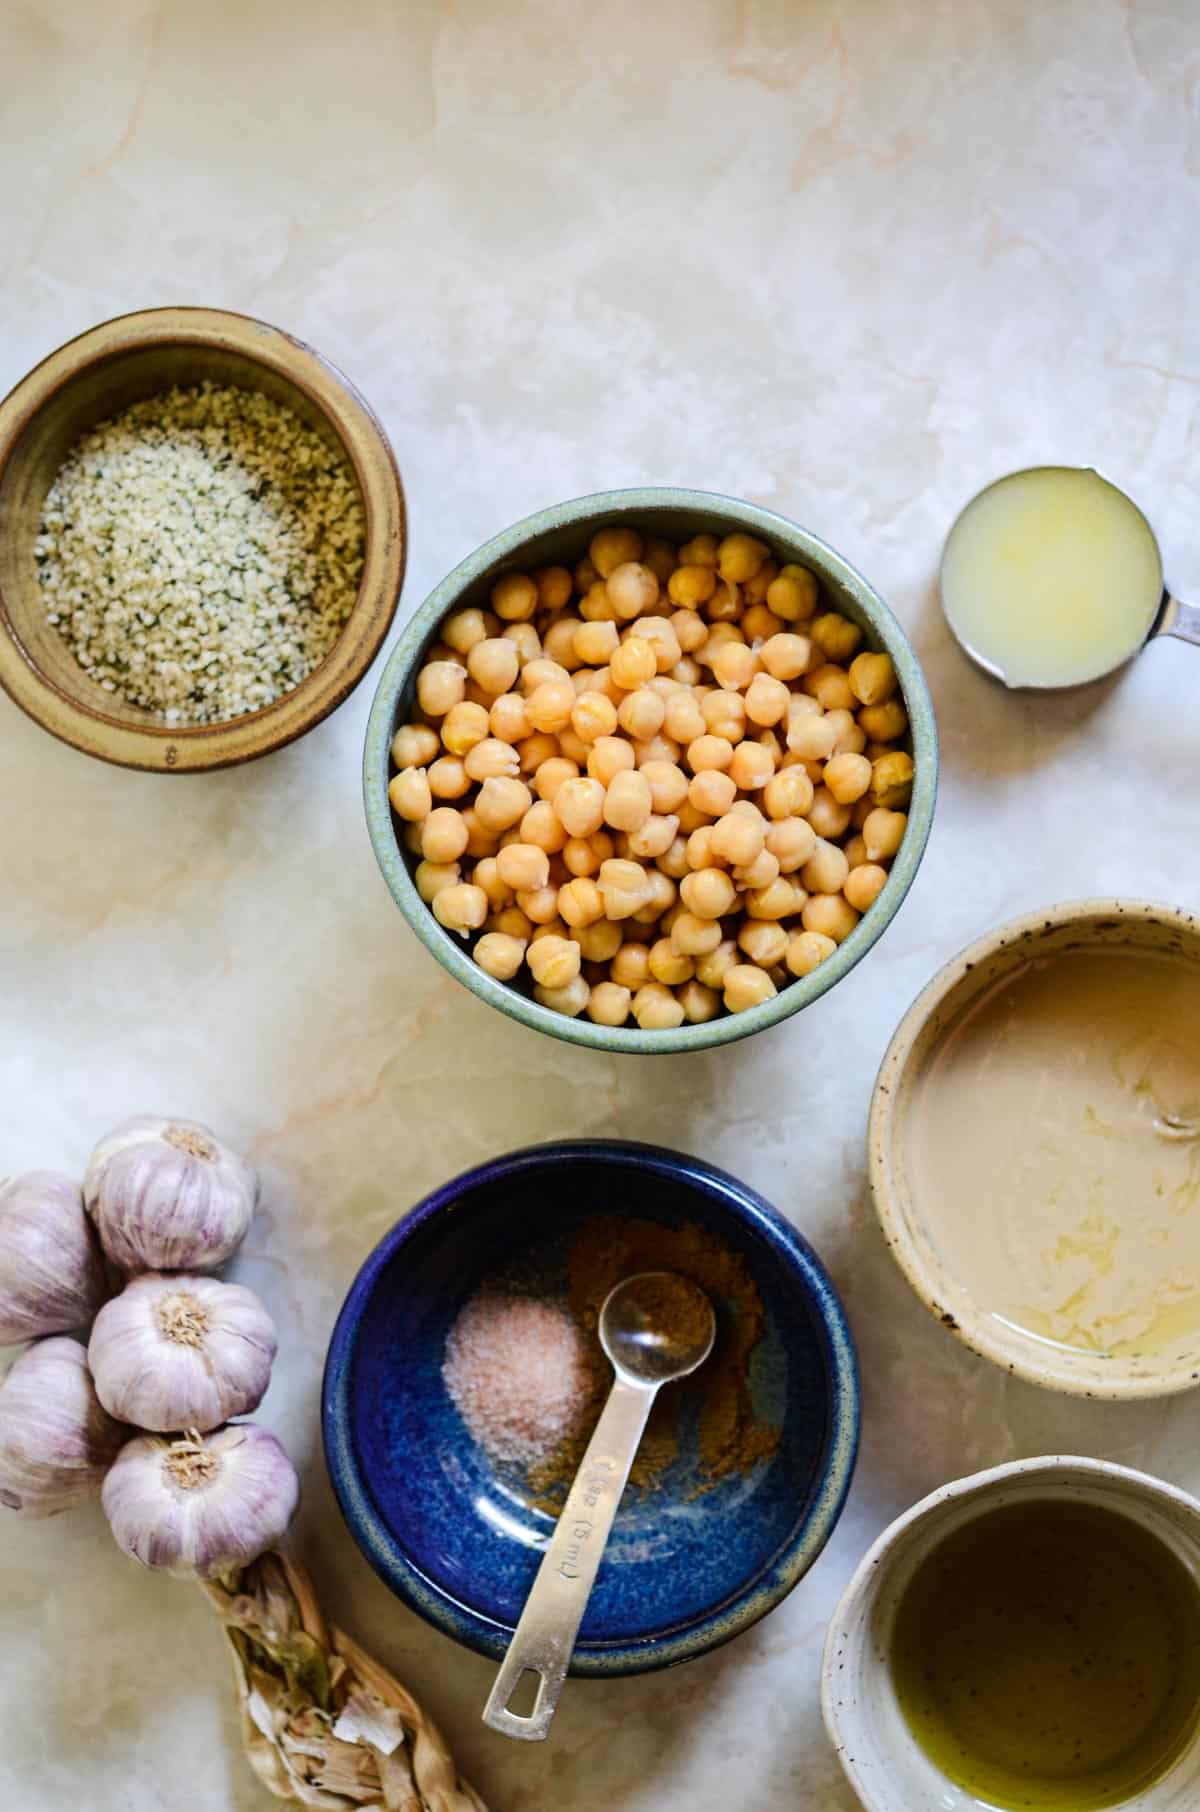 Chickpeas, lemon juice, tahini, olive oil, sea salt, cumin, garlic, and hemp hearts all measured to make hummus.